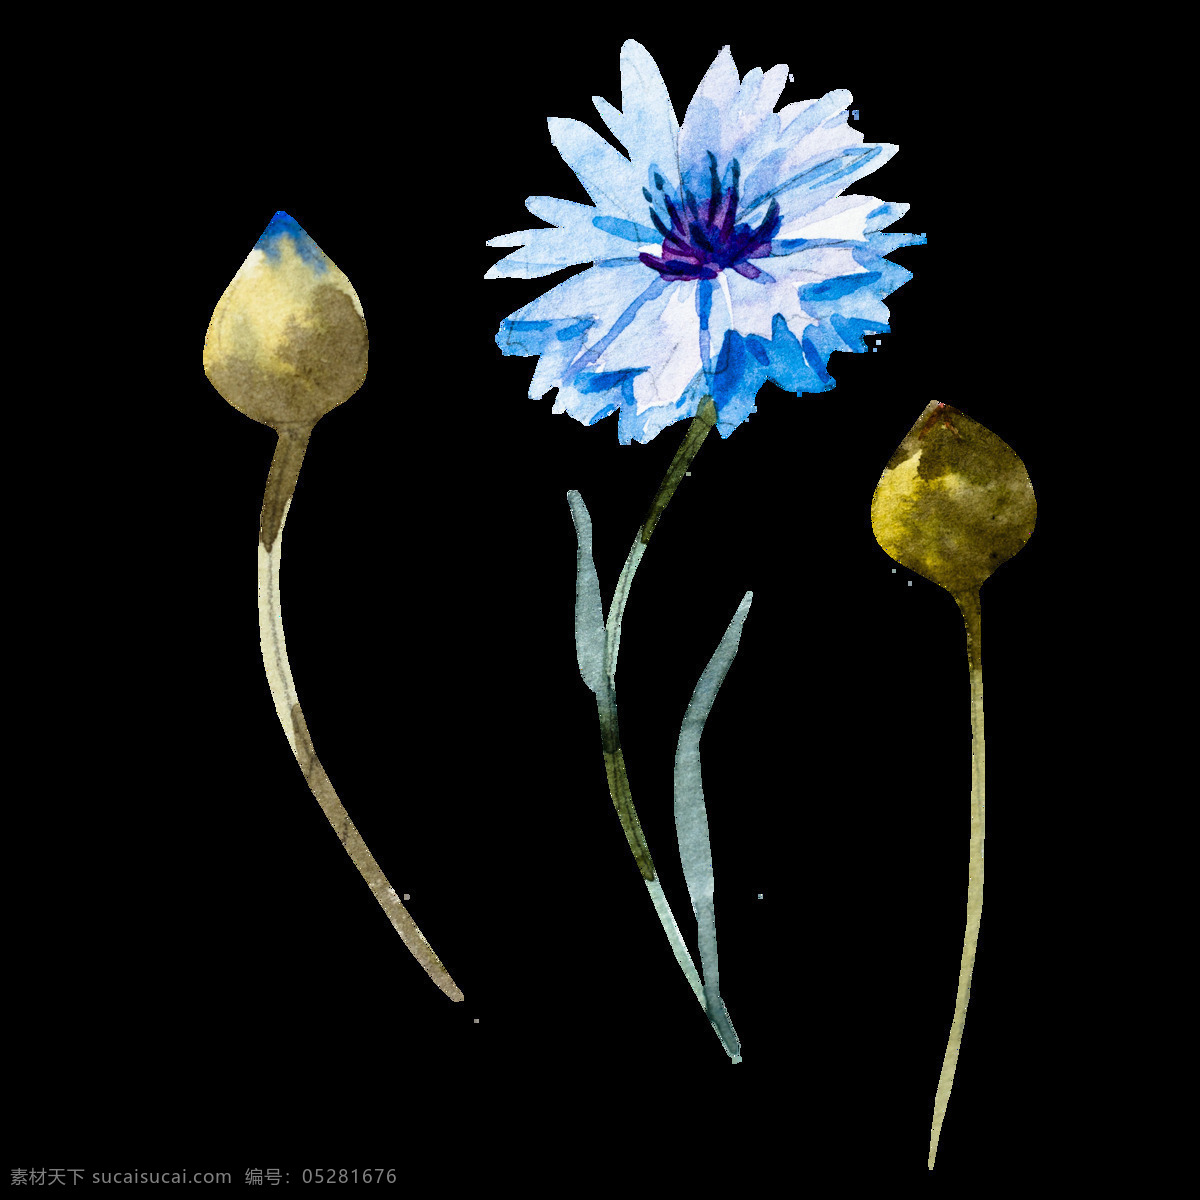 蓝色 创意 花卉 卡通 透明 抠图专用 装饰 设计素材